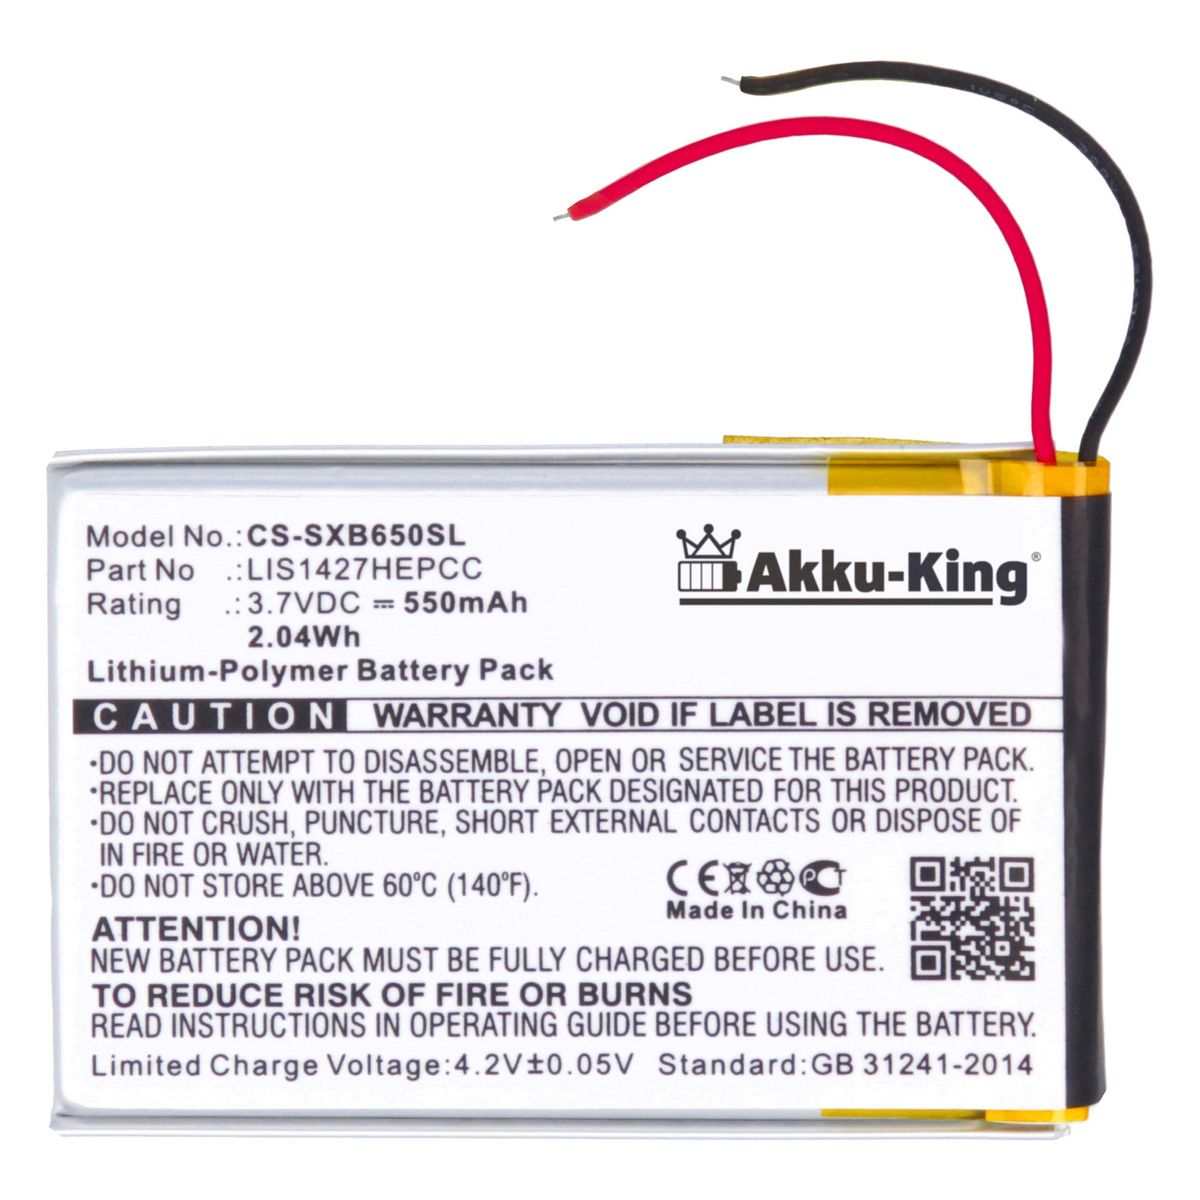 AKKU-KING Akku Volt, 1-756-920-31 Sony 550mAh mit 3.7 Li-Polymer kompatibel Geräte-Akku